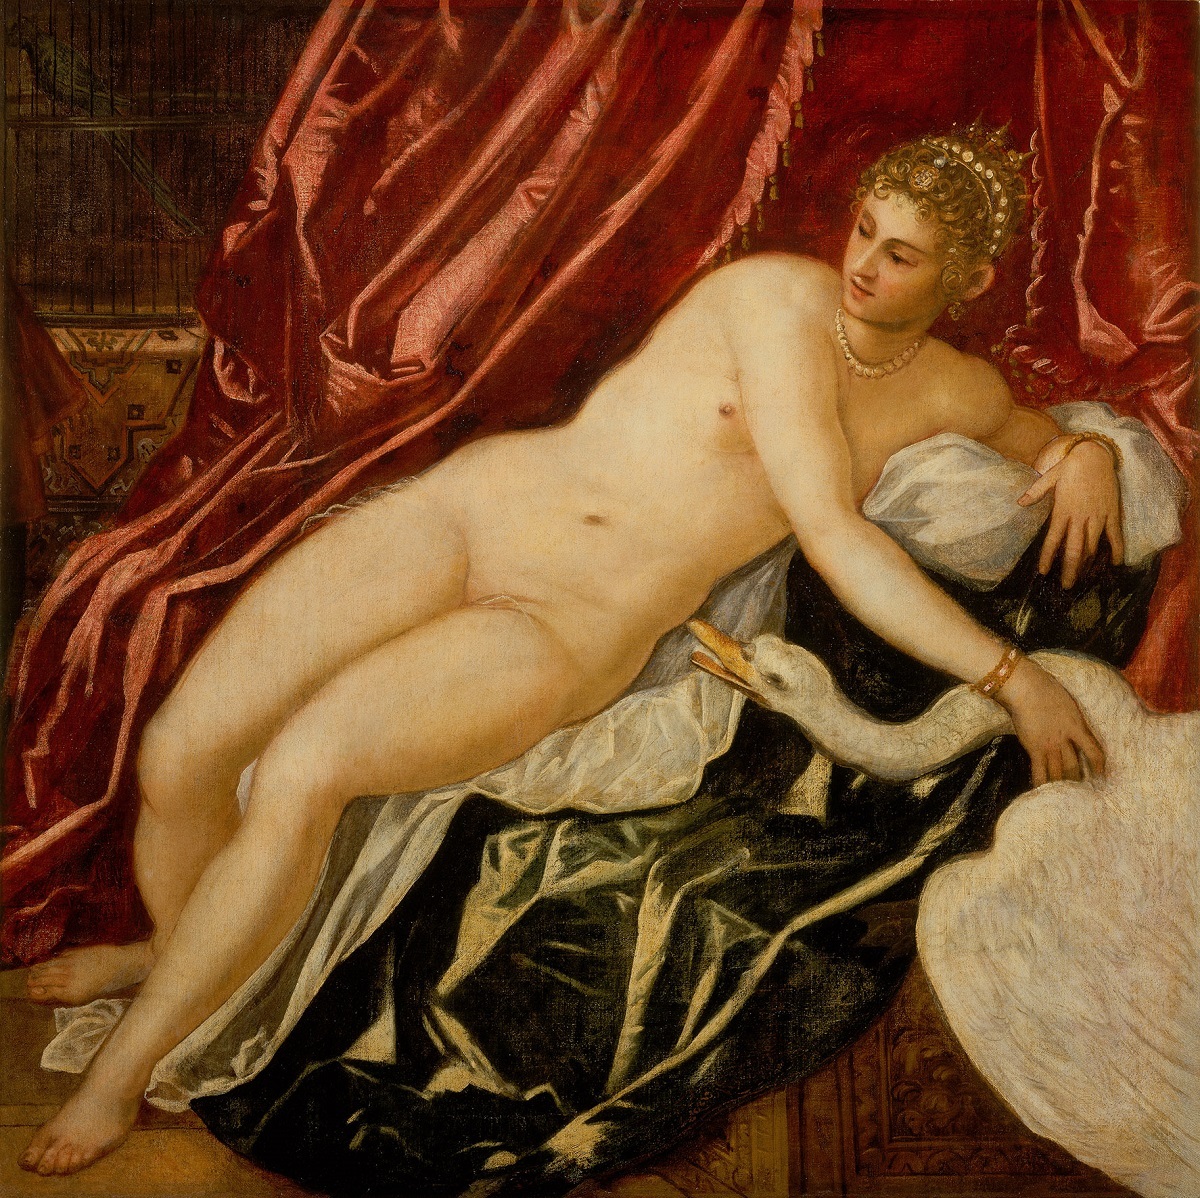 ヤコポ・ティントレット 《レダと白鳥》 1551-55 年頃、油彩、カンヴァス、147.5×147.5cm、フィレンツェ、ウフィツィ美術館